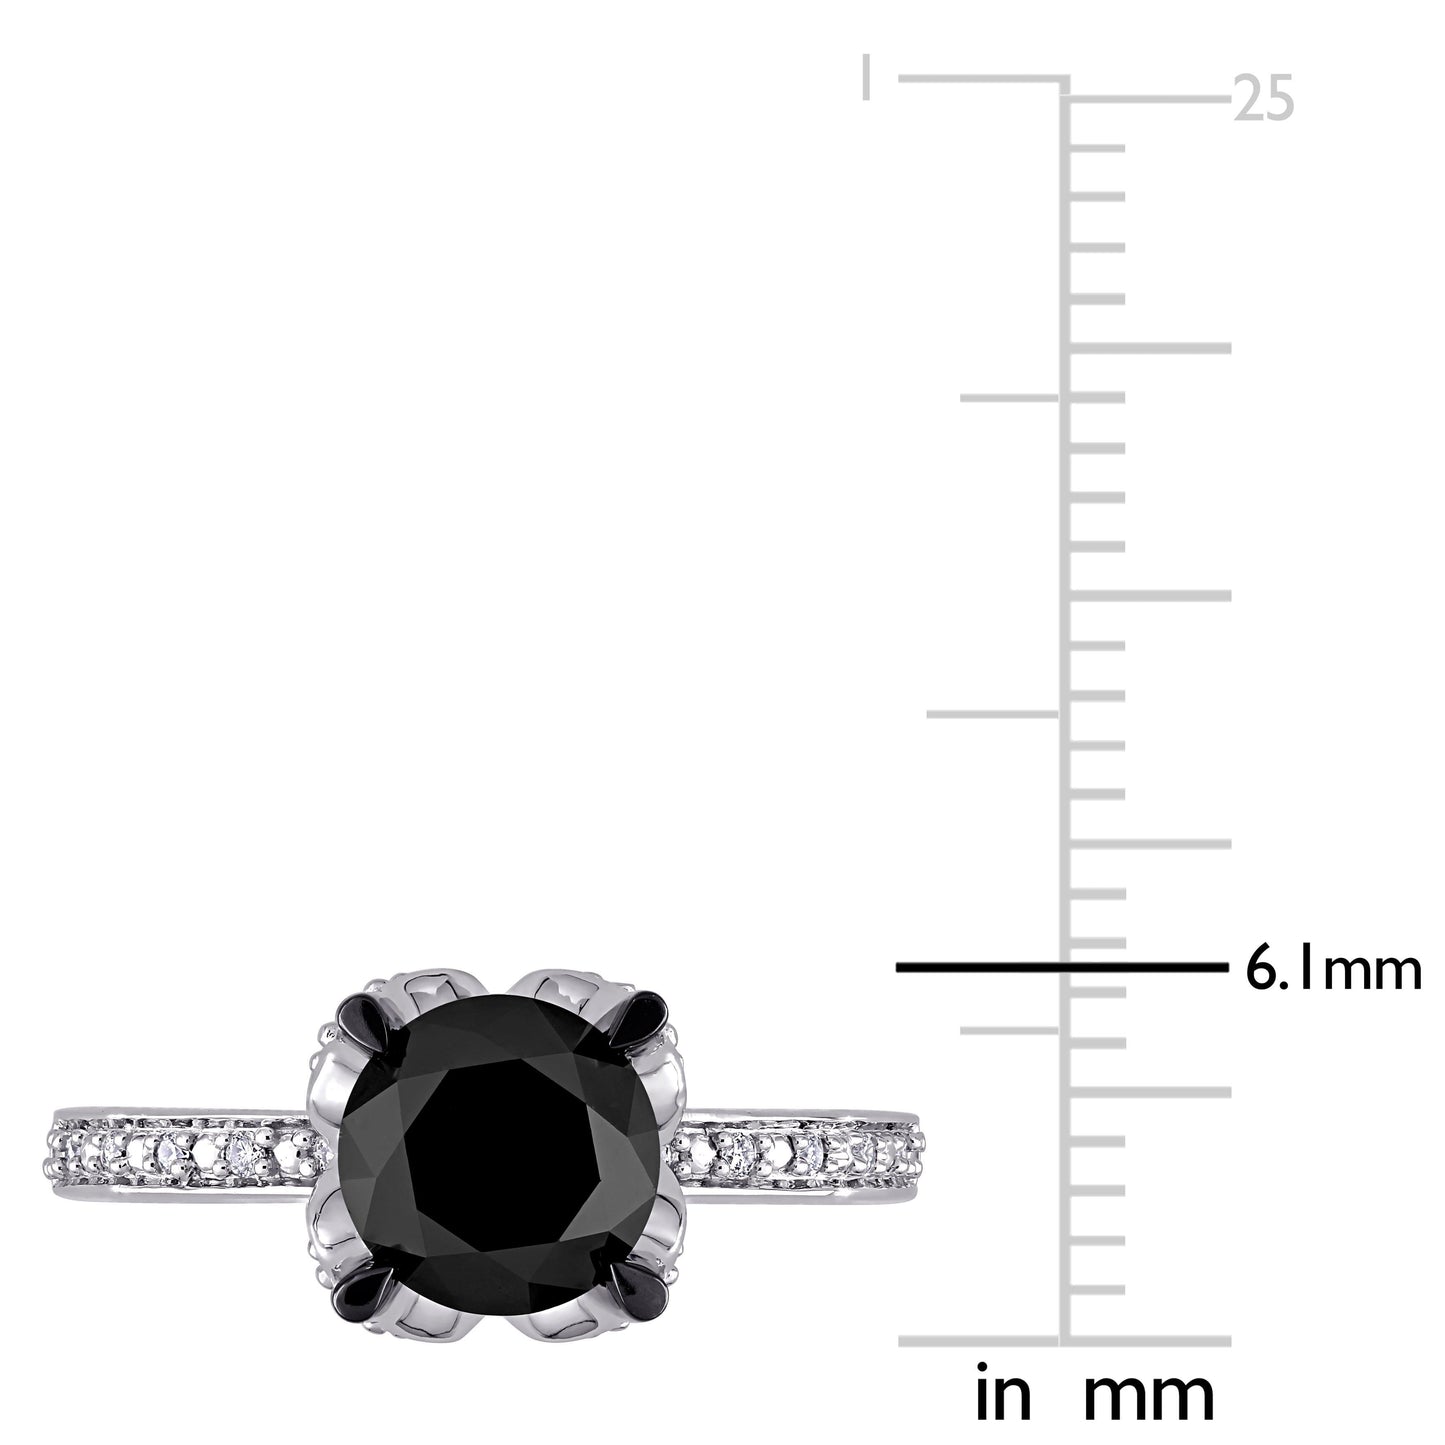 Black & White Diamond Engagement Ring in 14k White Gold